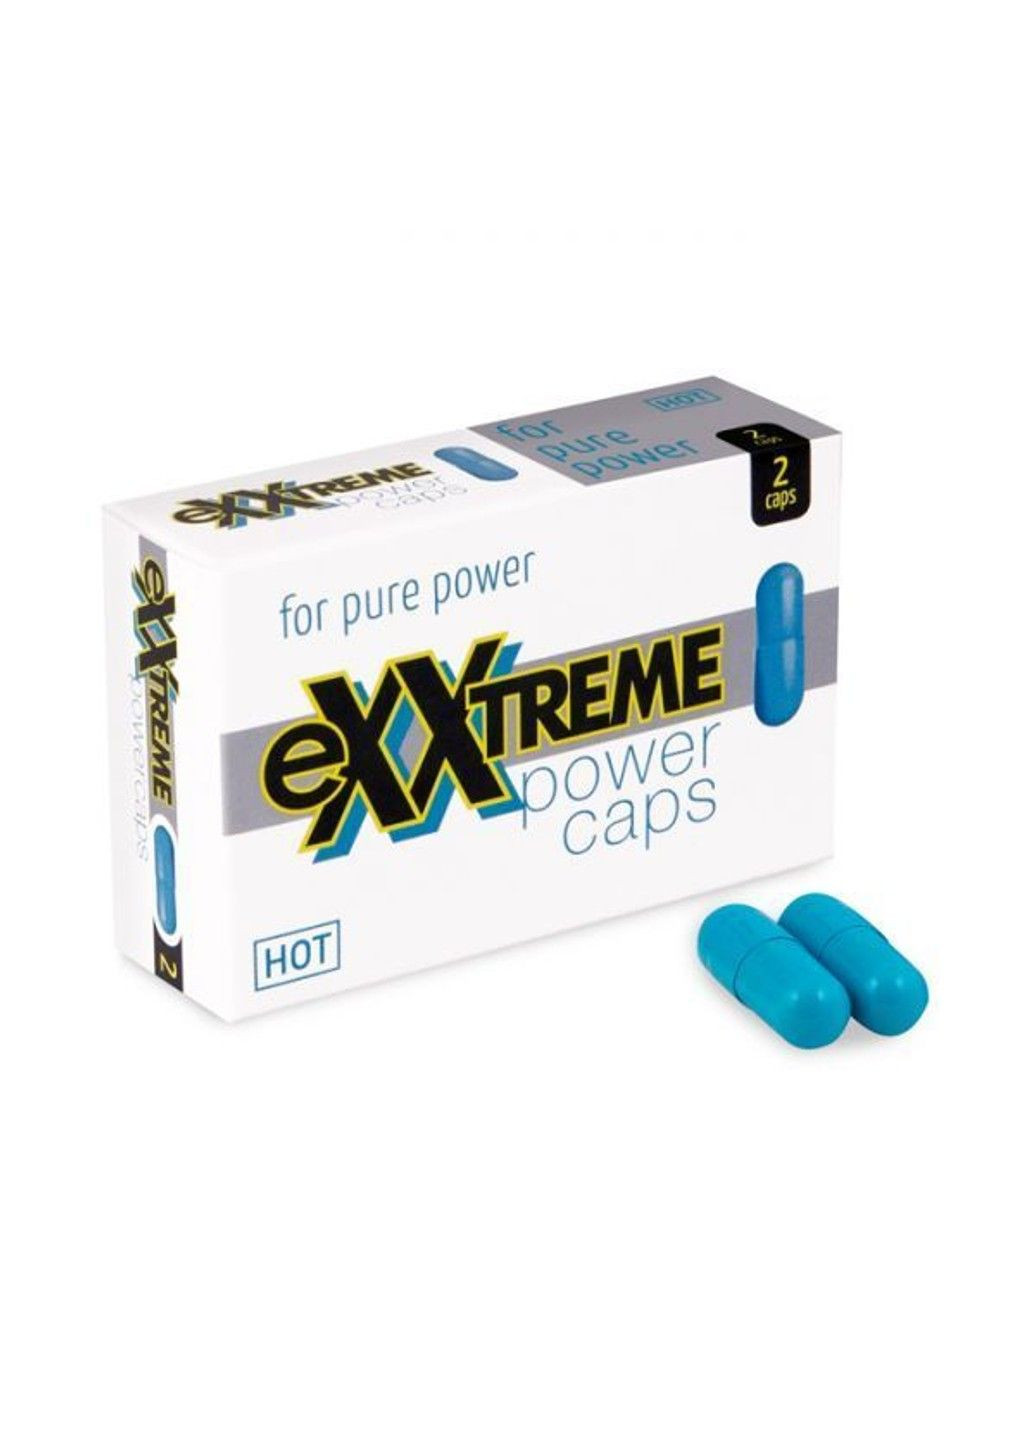 Капсули для потенції eXXtreme, (ціна за 2 капсули в упаковці) Hot (291120557)